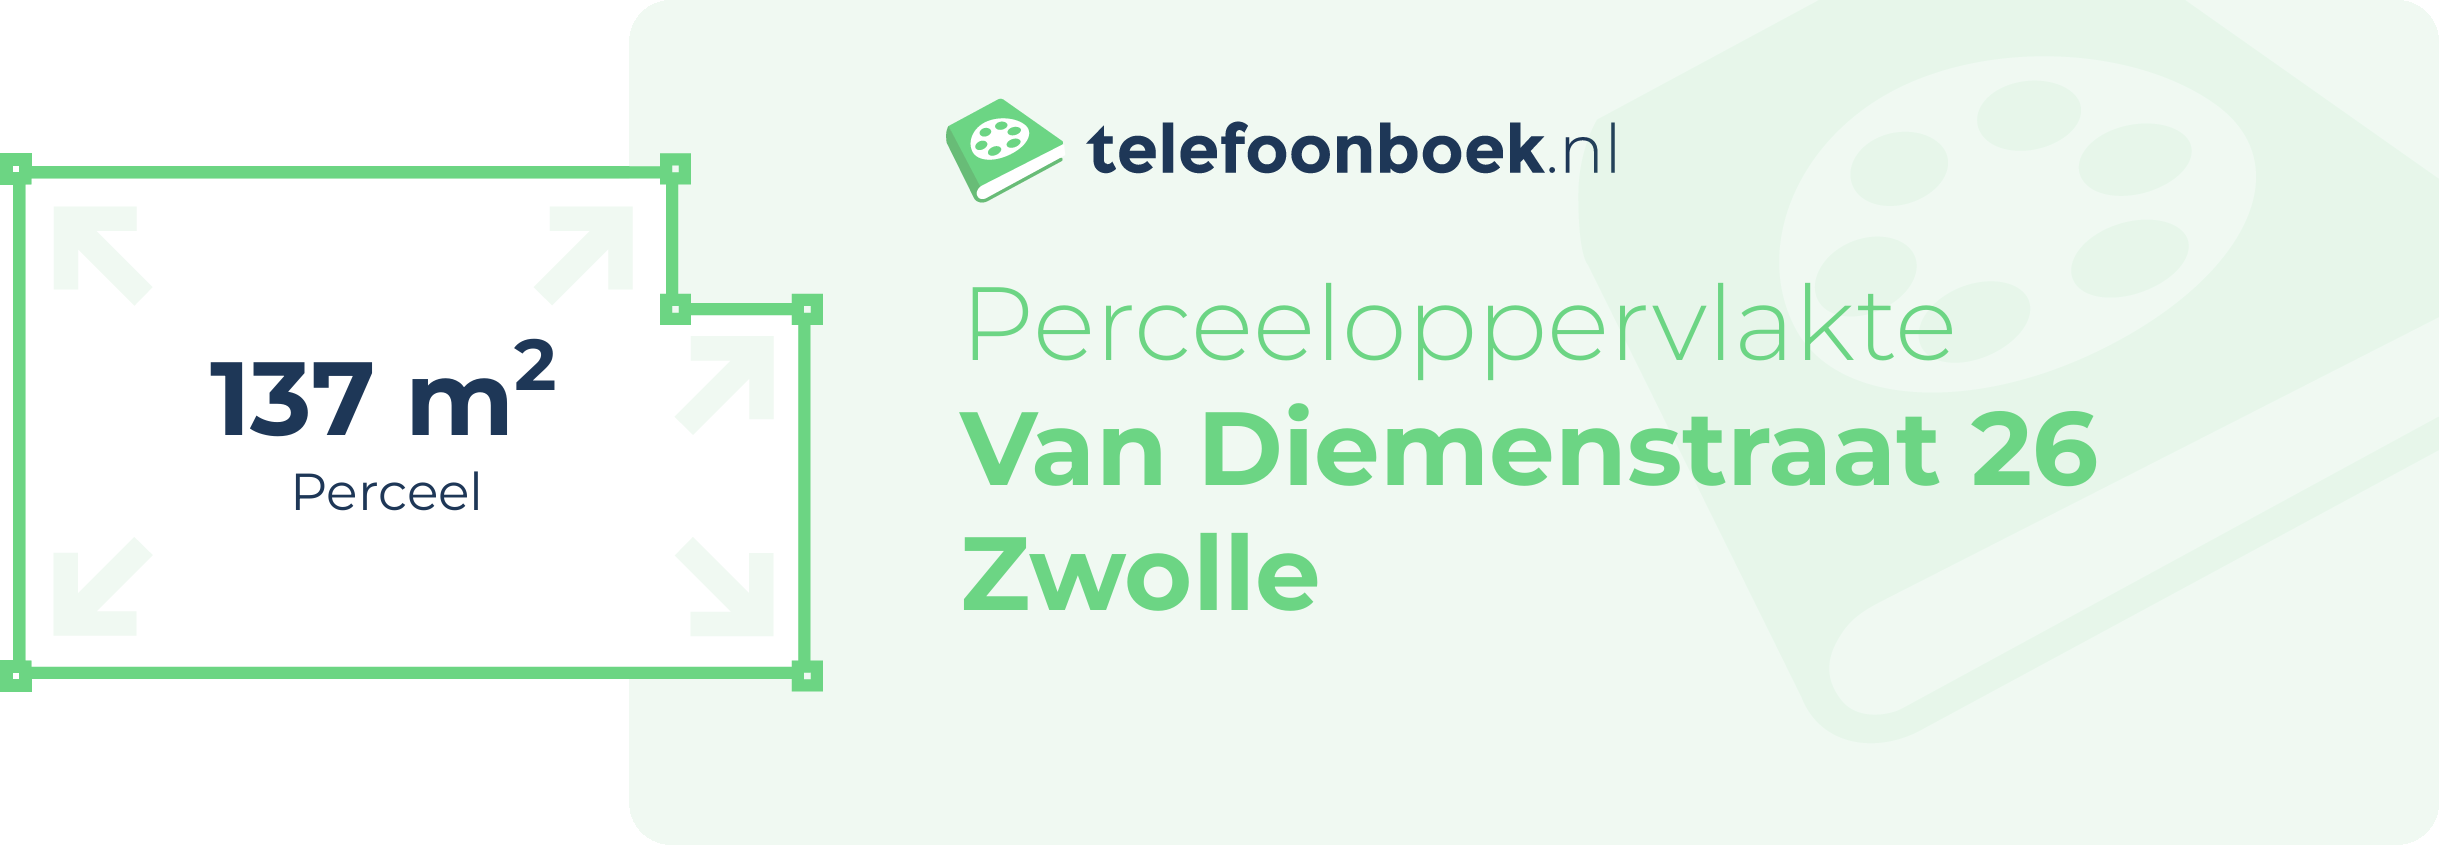 Perceeloppervlakte Van Diemenstraat 26 Zwolle